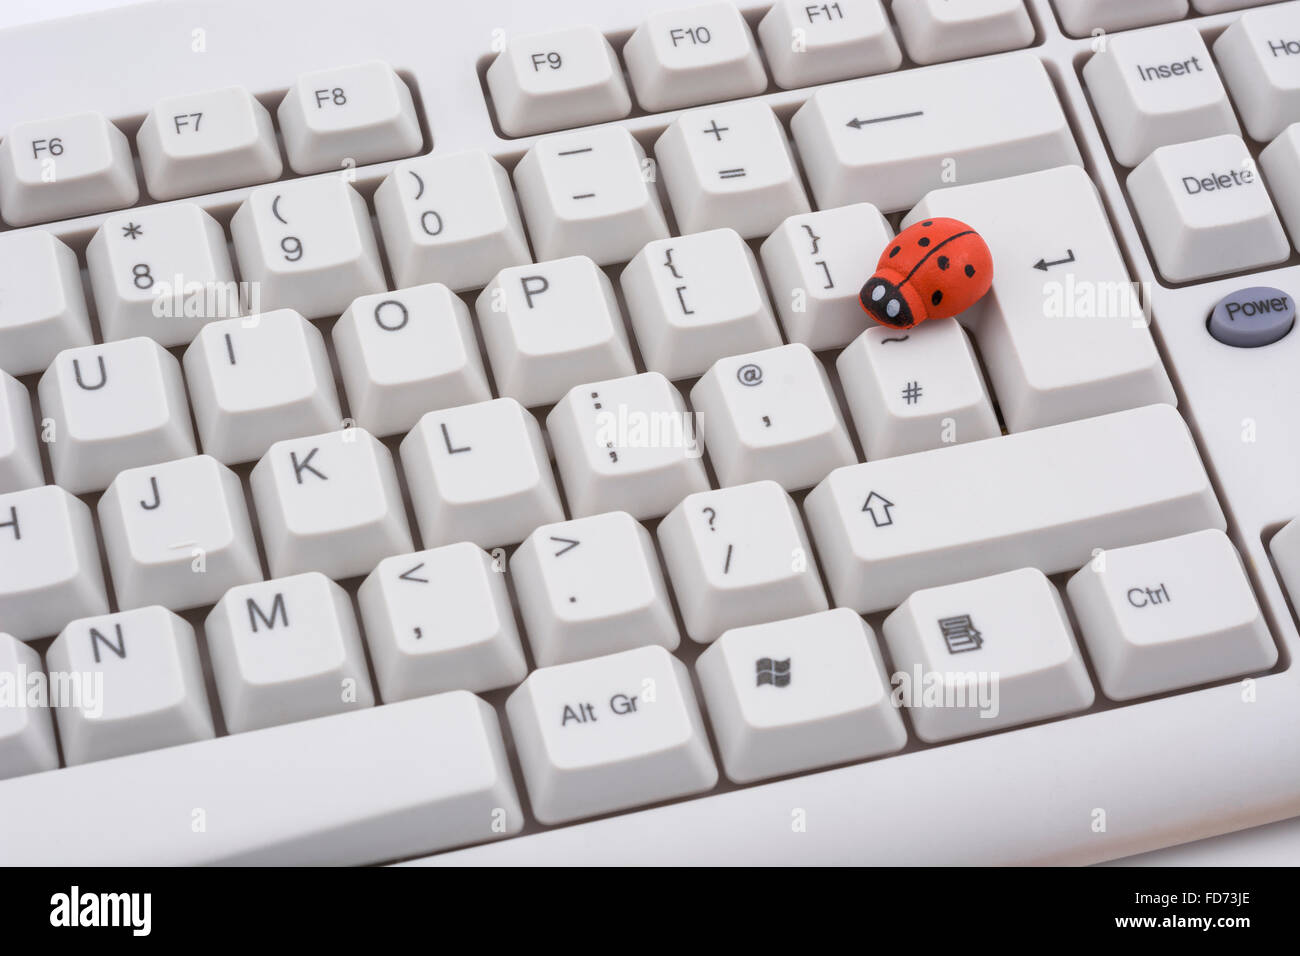 Marienkäfer / Ladybug auf PC-Tastatur - als visuelle Metapher für den Begriff "Computervirus" oder virale / System "Infektion". Stockfoto